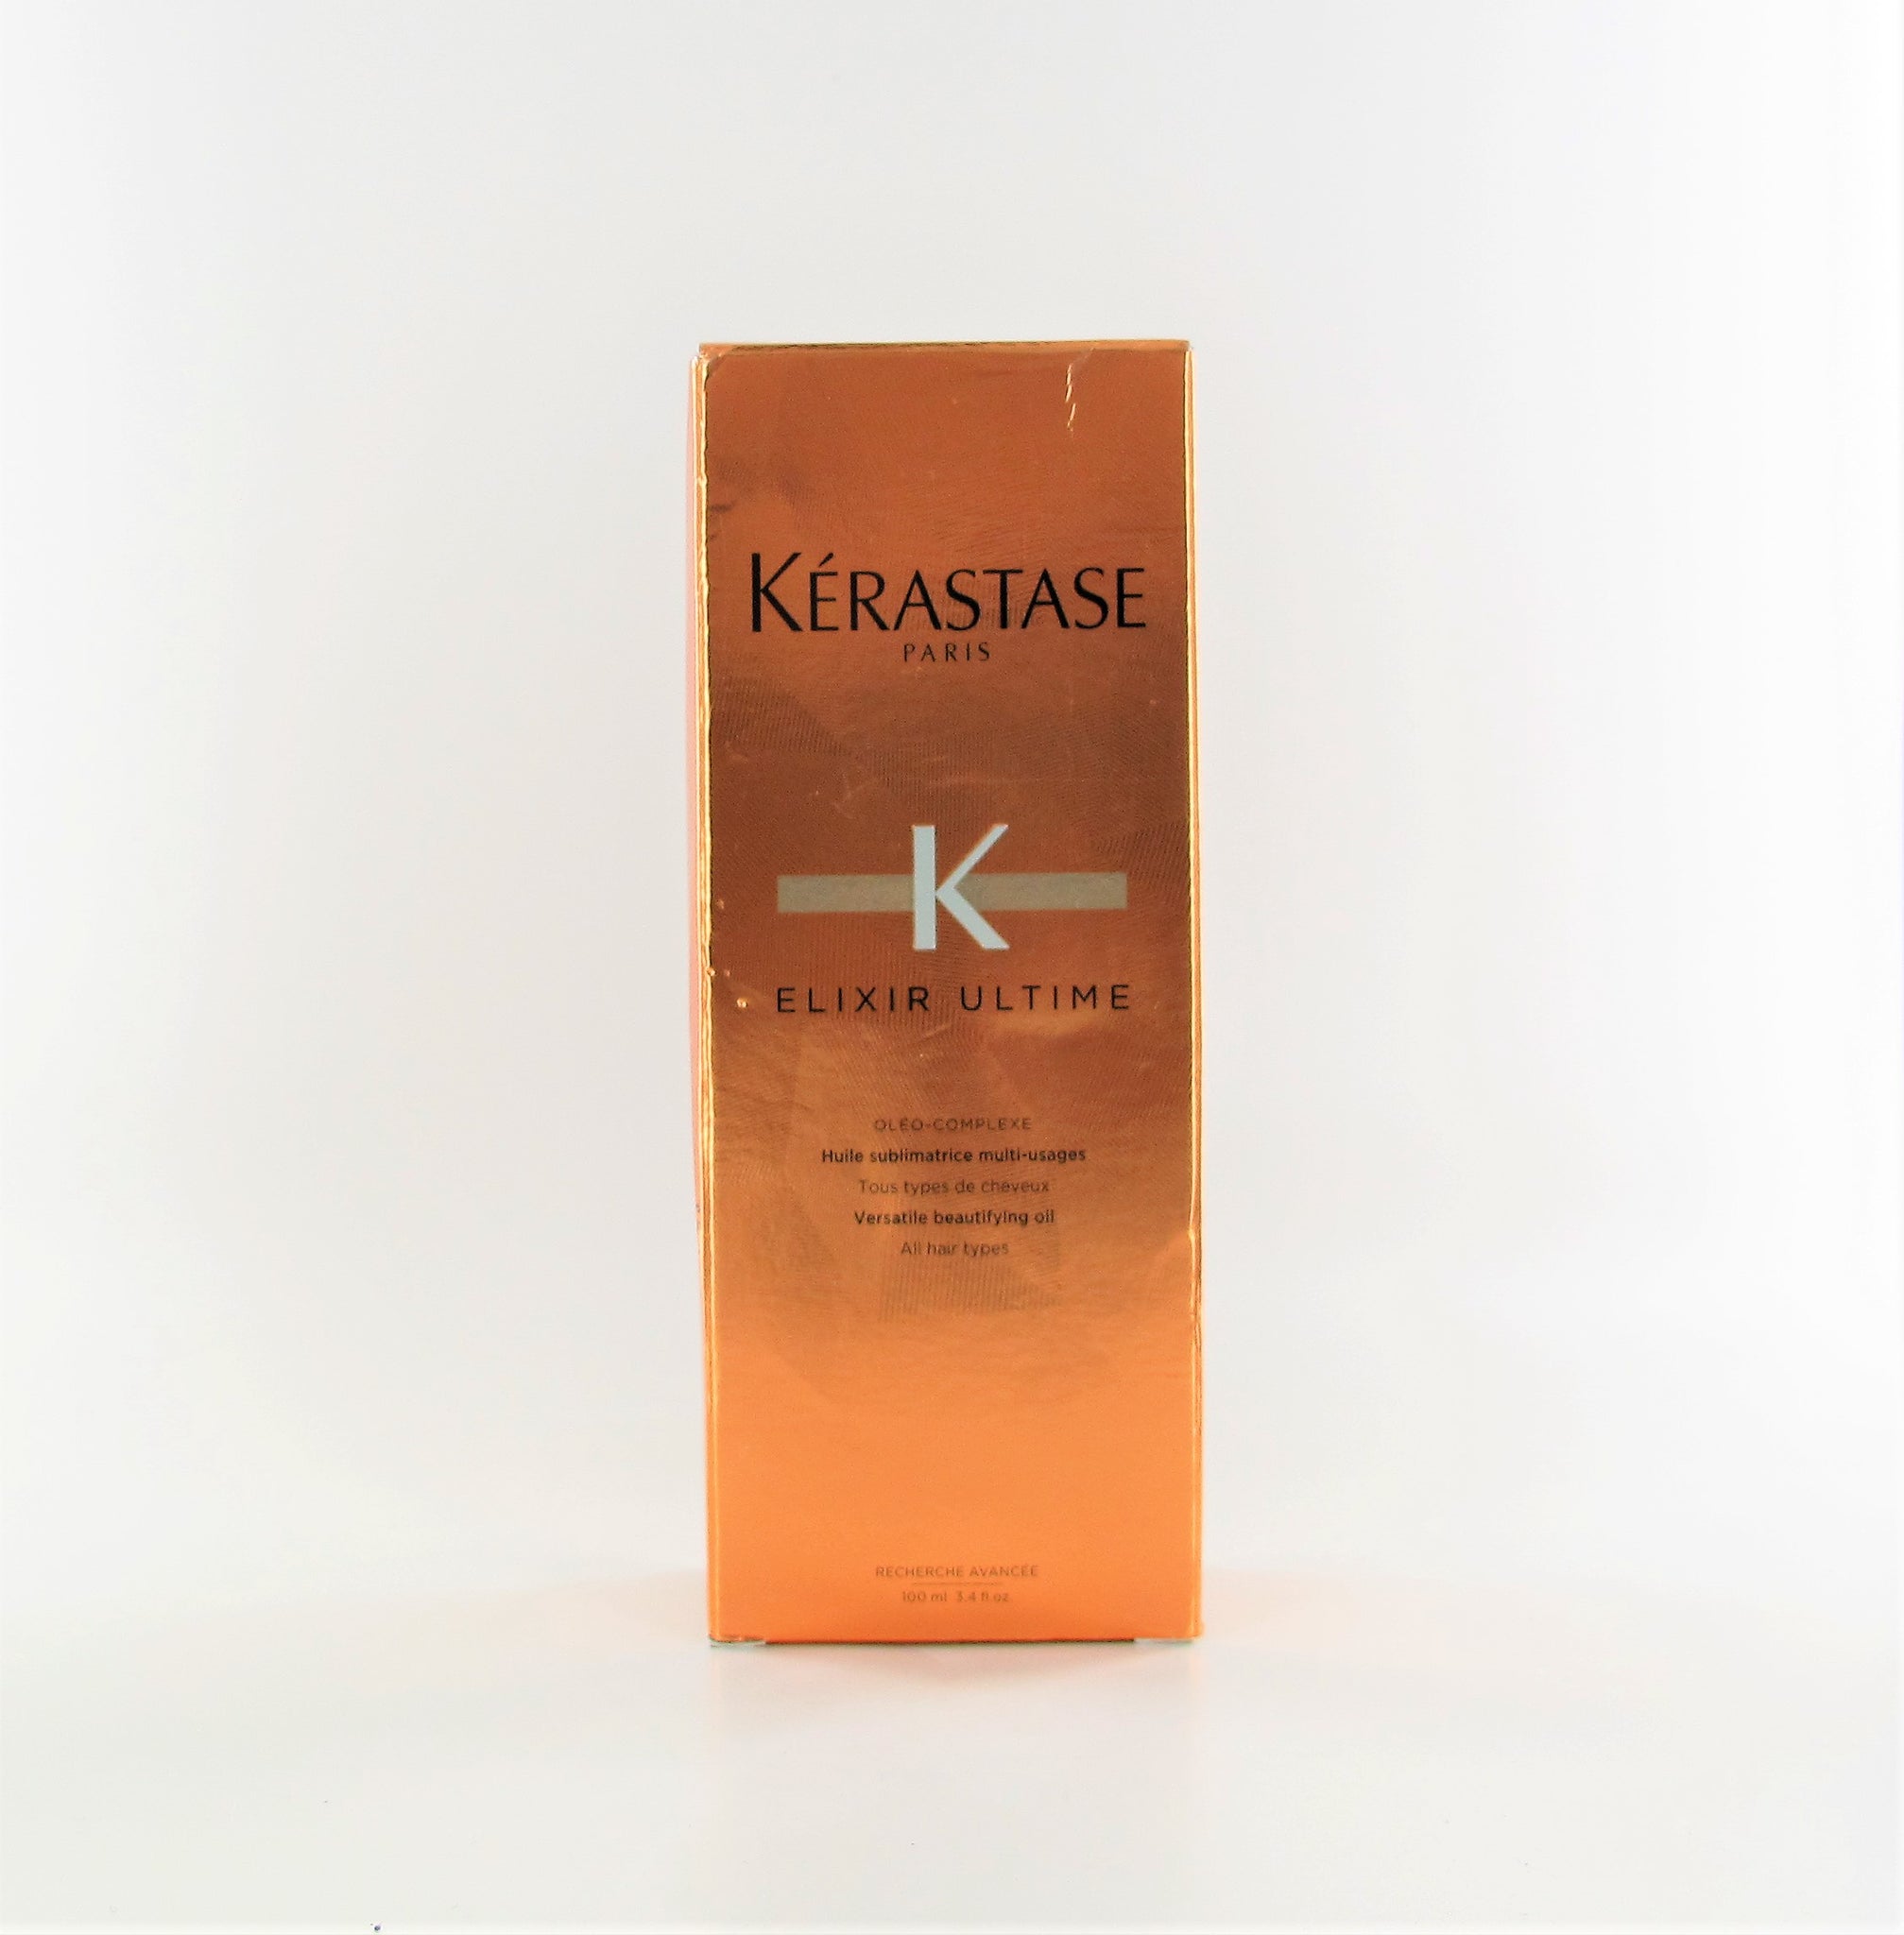 KERASTASE Elixir Ultime Versatile Beautifying Hair Oil 3.4 oz